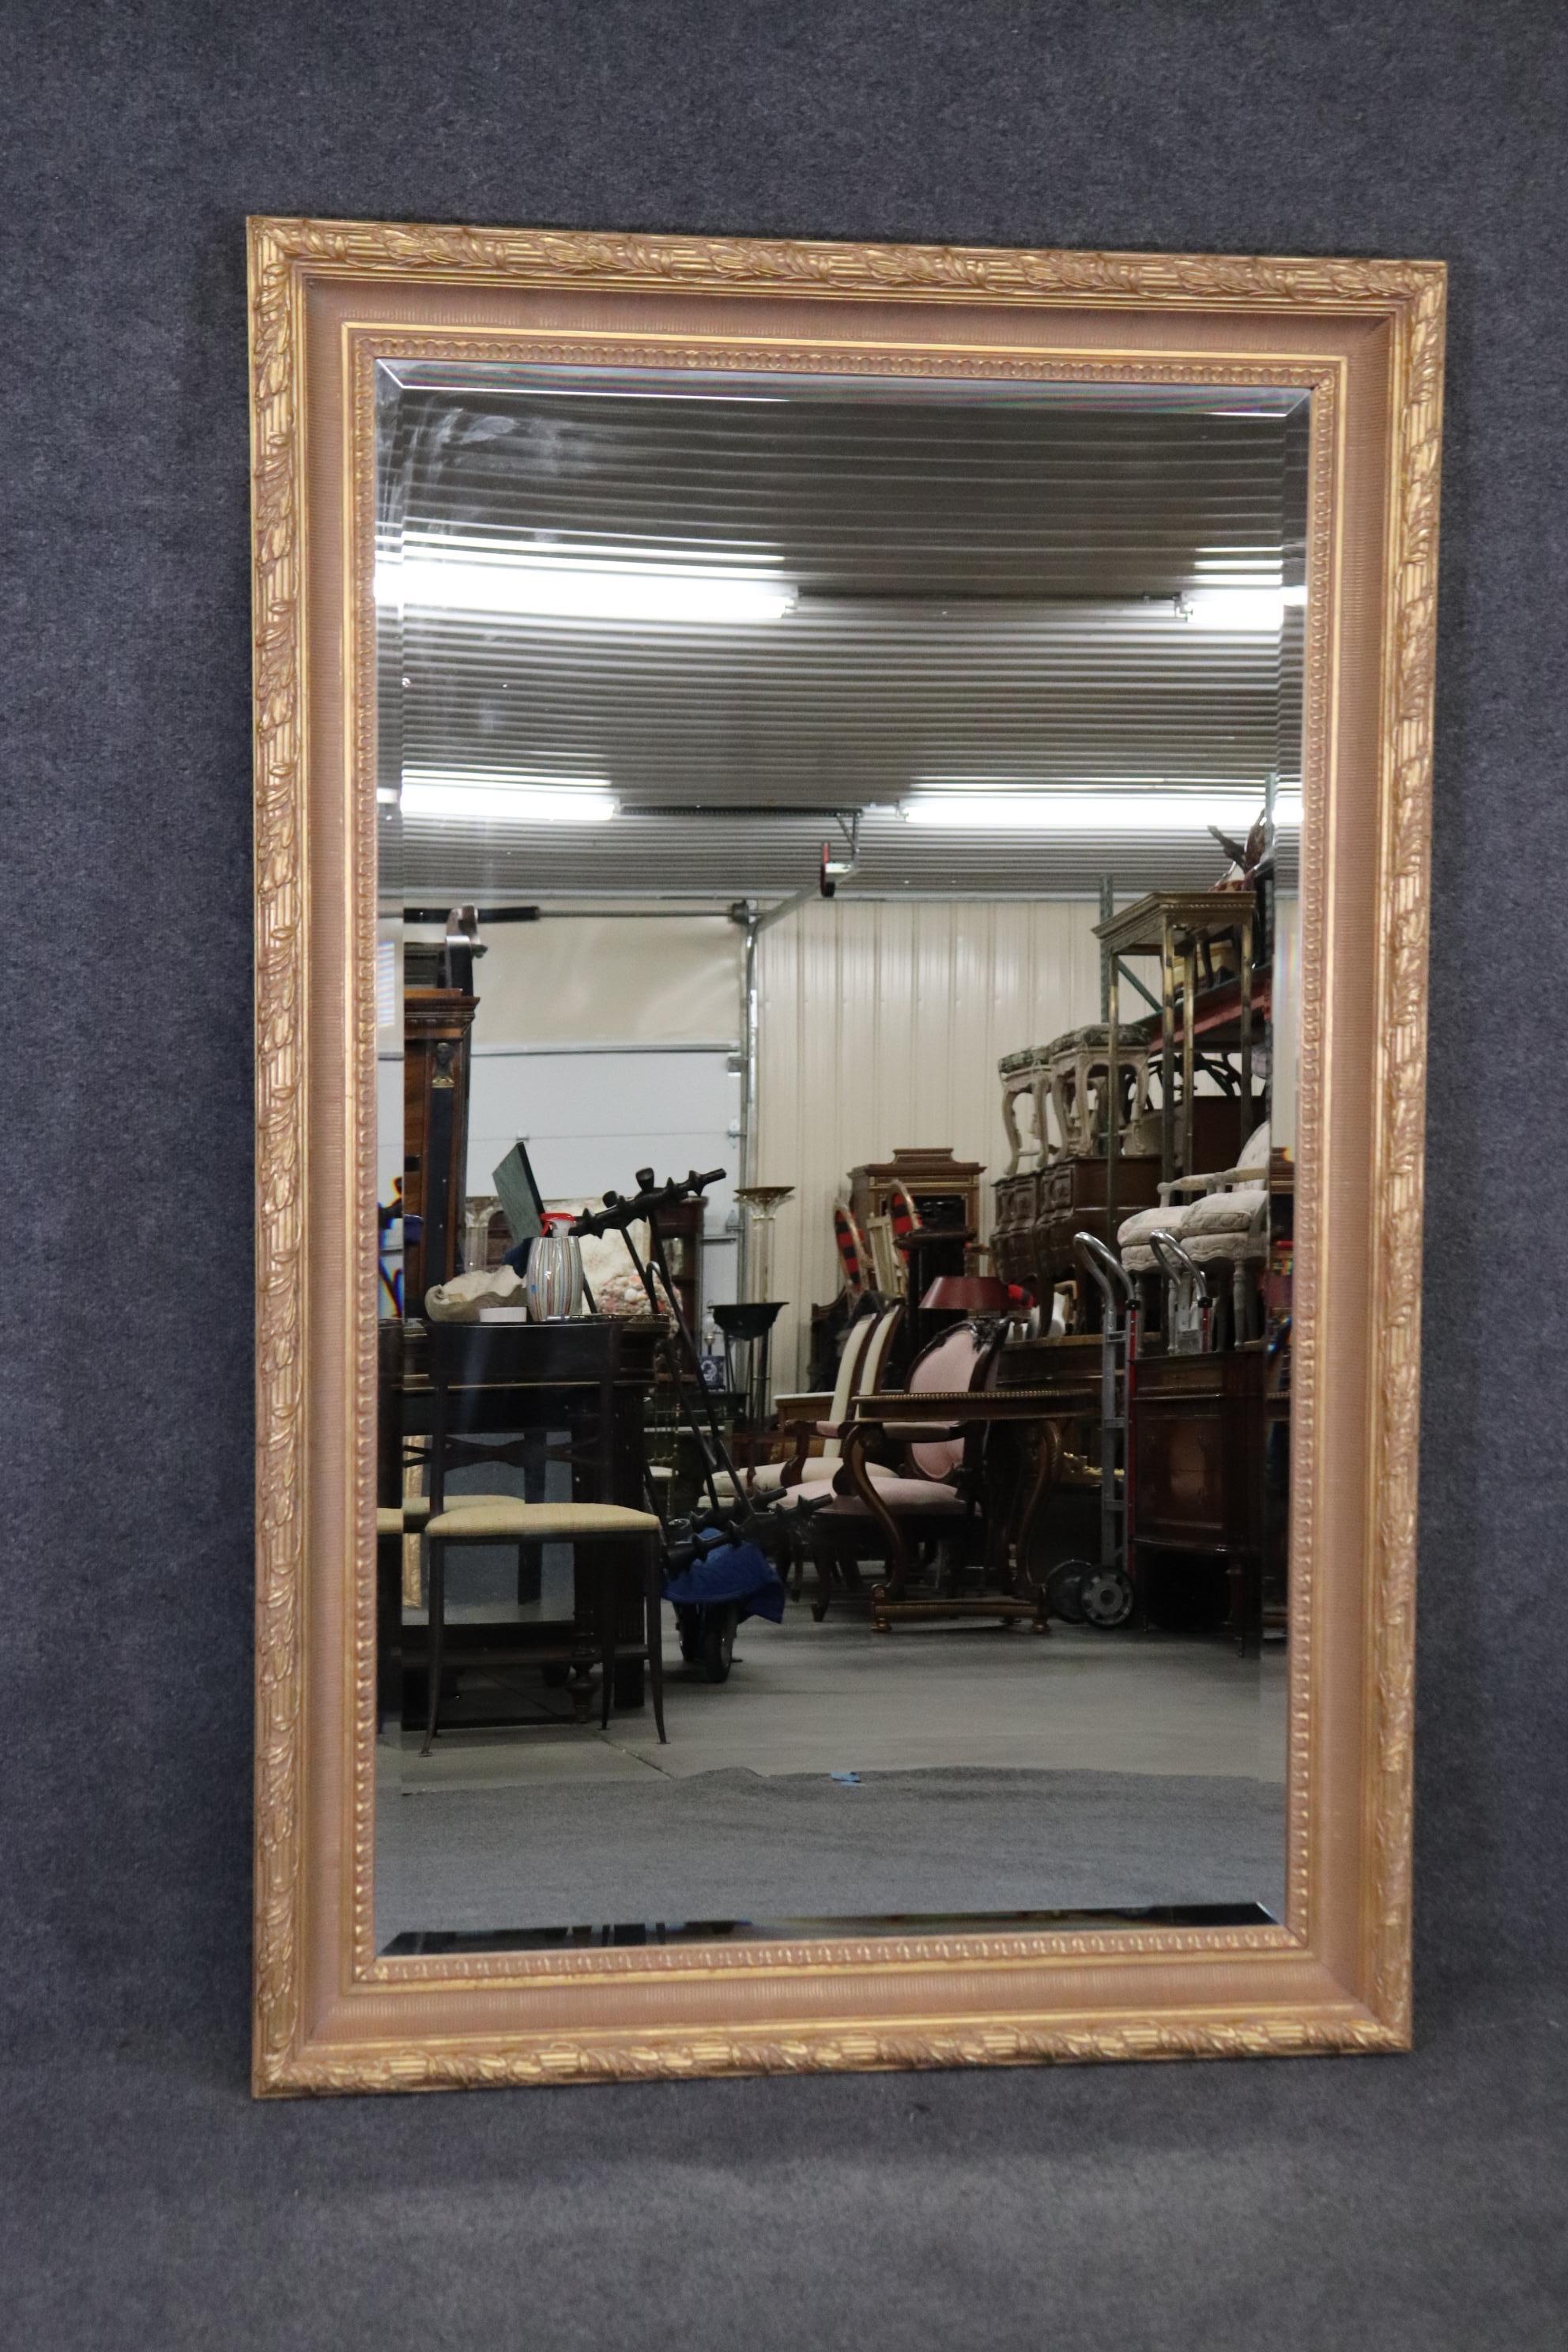 Abmessungen- H: 44 1/2in B: 69in T: 3in 
Dieser große, vergoldete und abgeschrägte Glasspiegel von Labarge ist von höchster Qualität und perfekt, wenn Sie einen großen Spiegel mit Klasse und Eleganz suchen! Dieser Spiegel ist mit einem geschnitzten,